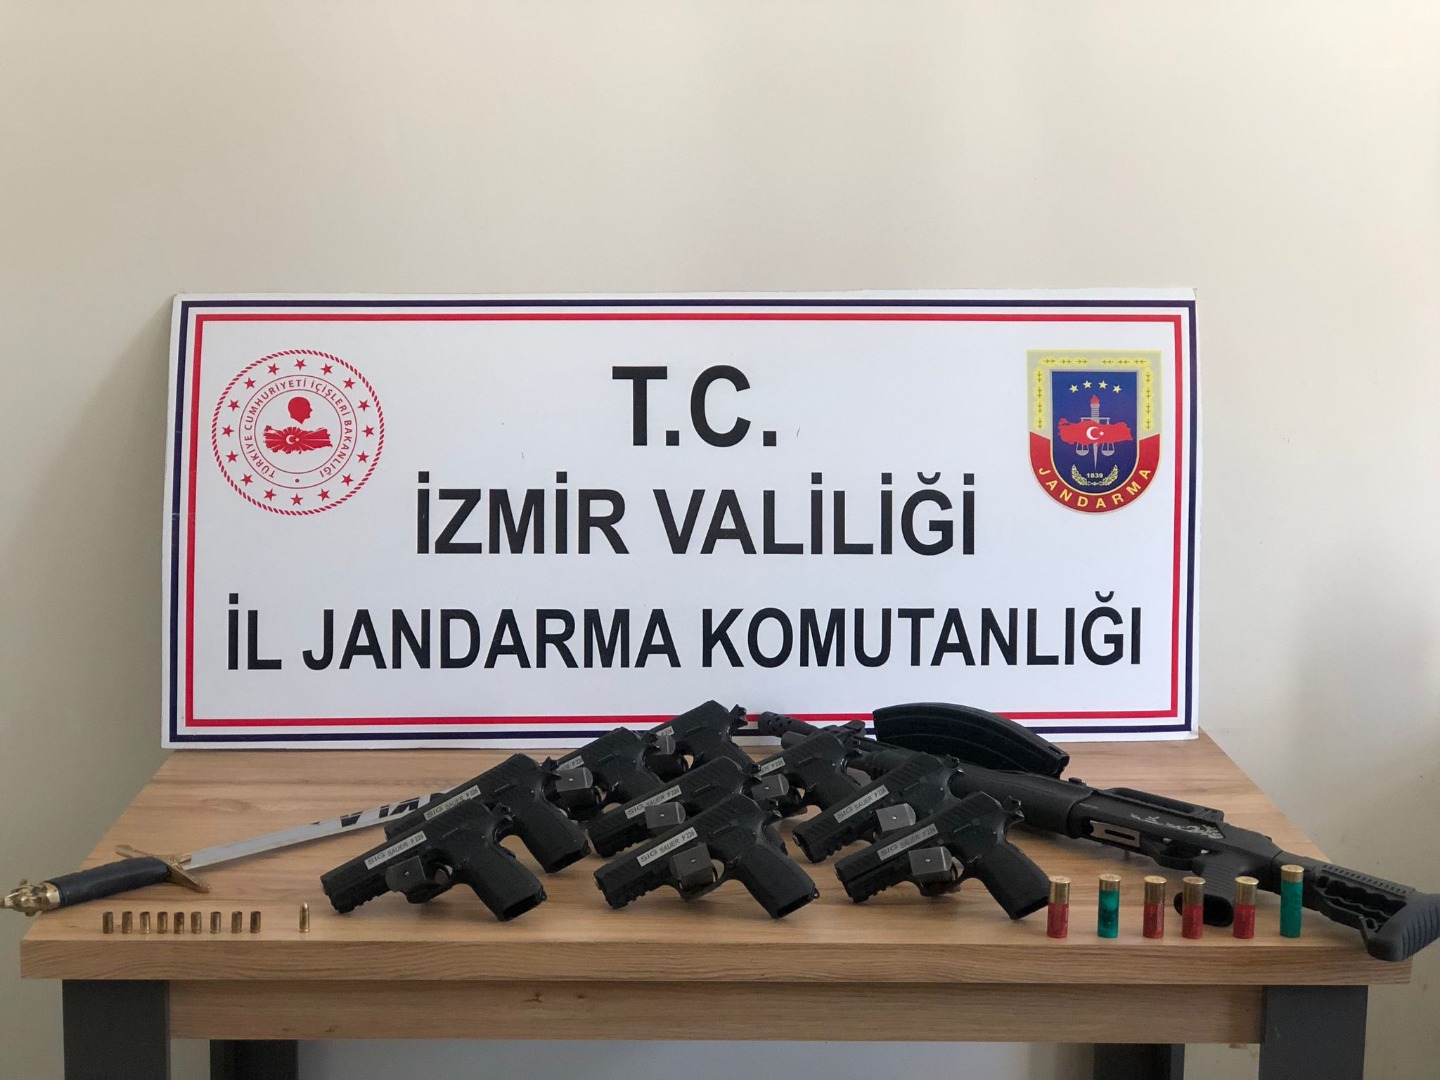 İzmir'de silah kaçakçılığı operasyonu: 3 gözaltı